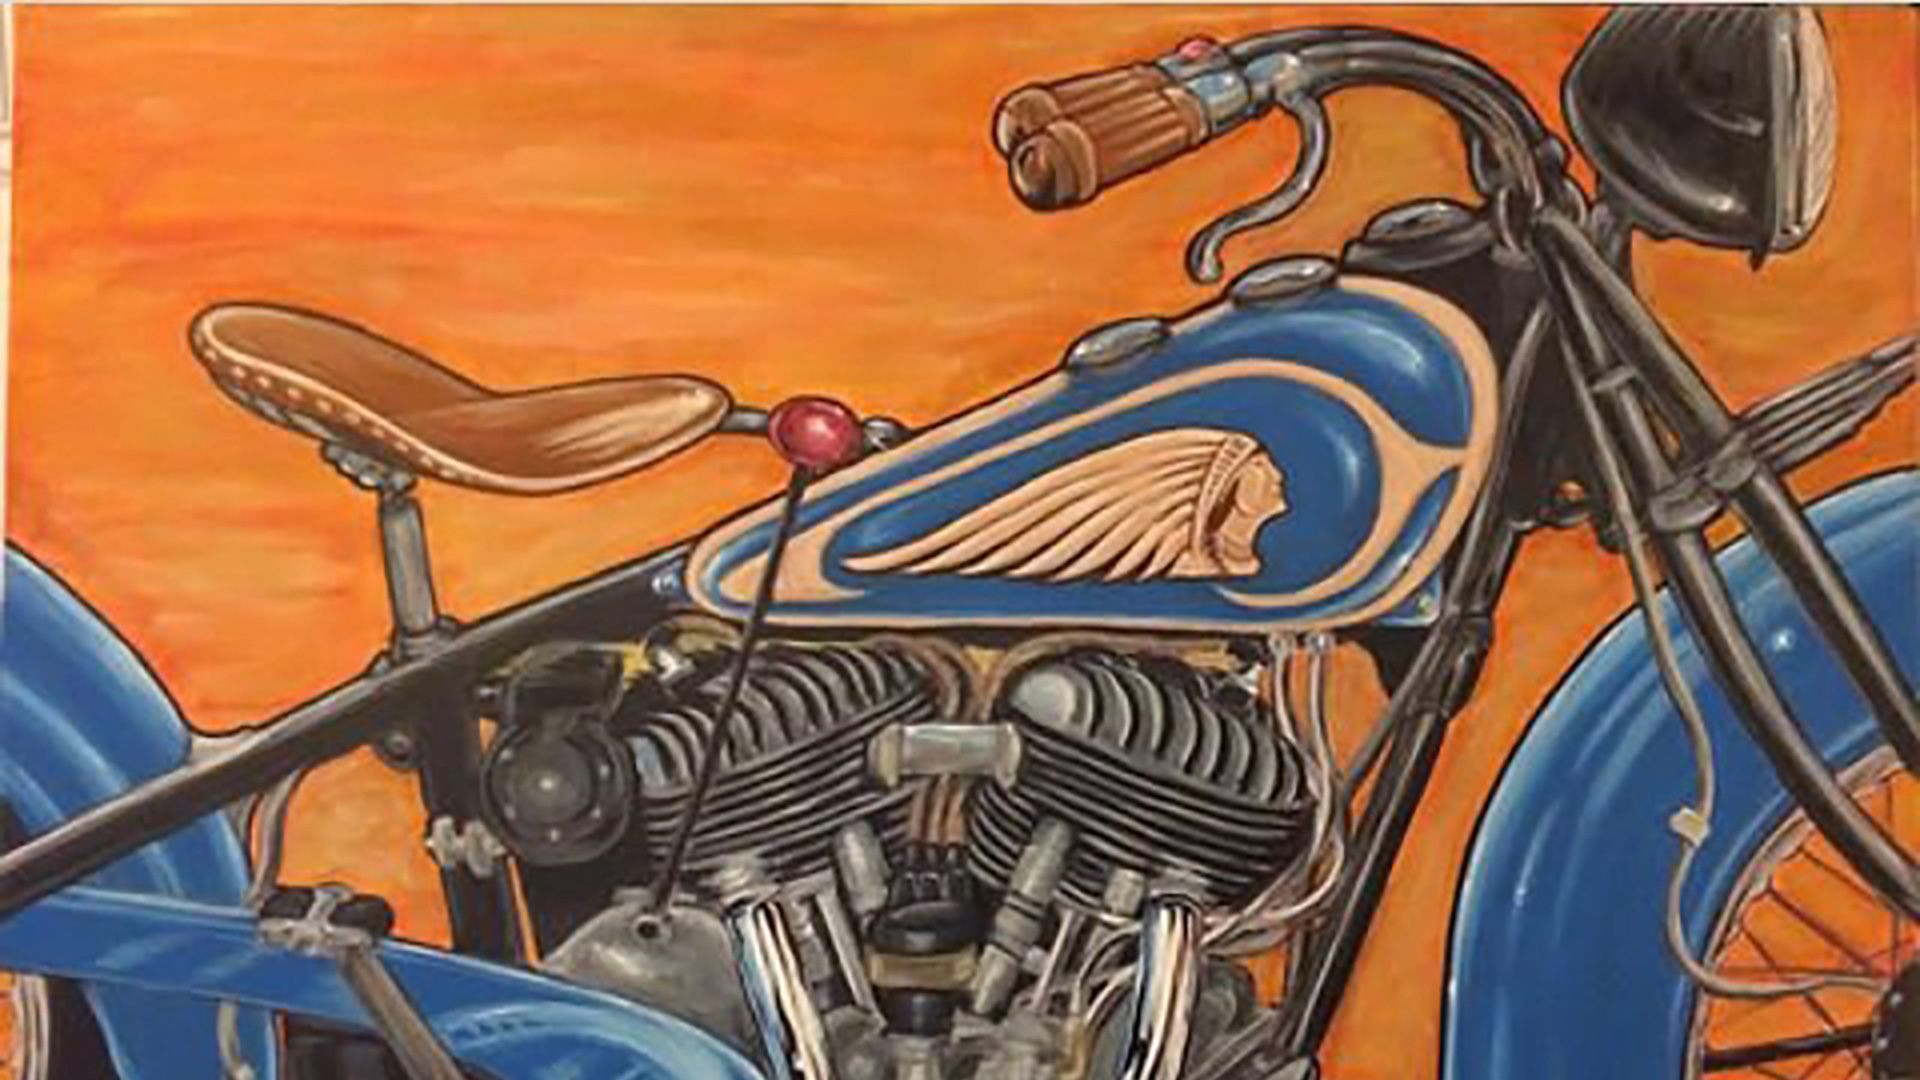 Indian® Motorcycle - Nippon -: FTR 1200 Artist Series